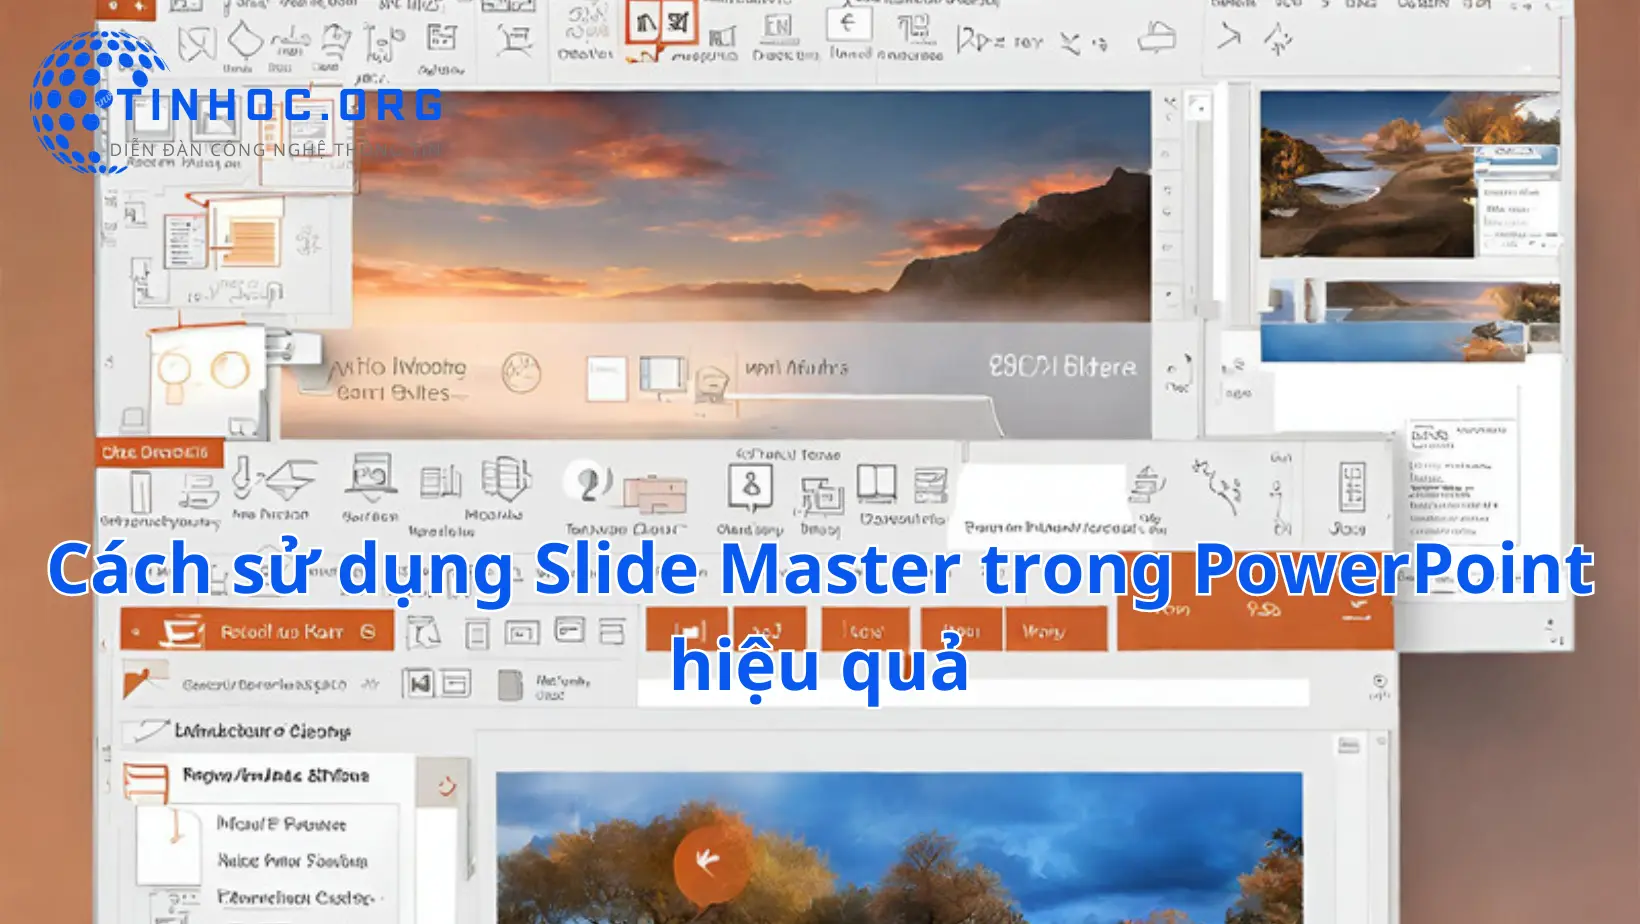 Cách sử dụng Slide Master trong PowerPoint hiệu quả